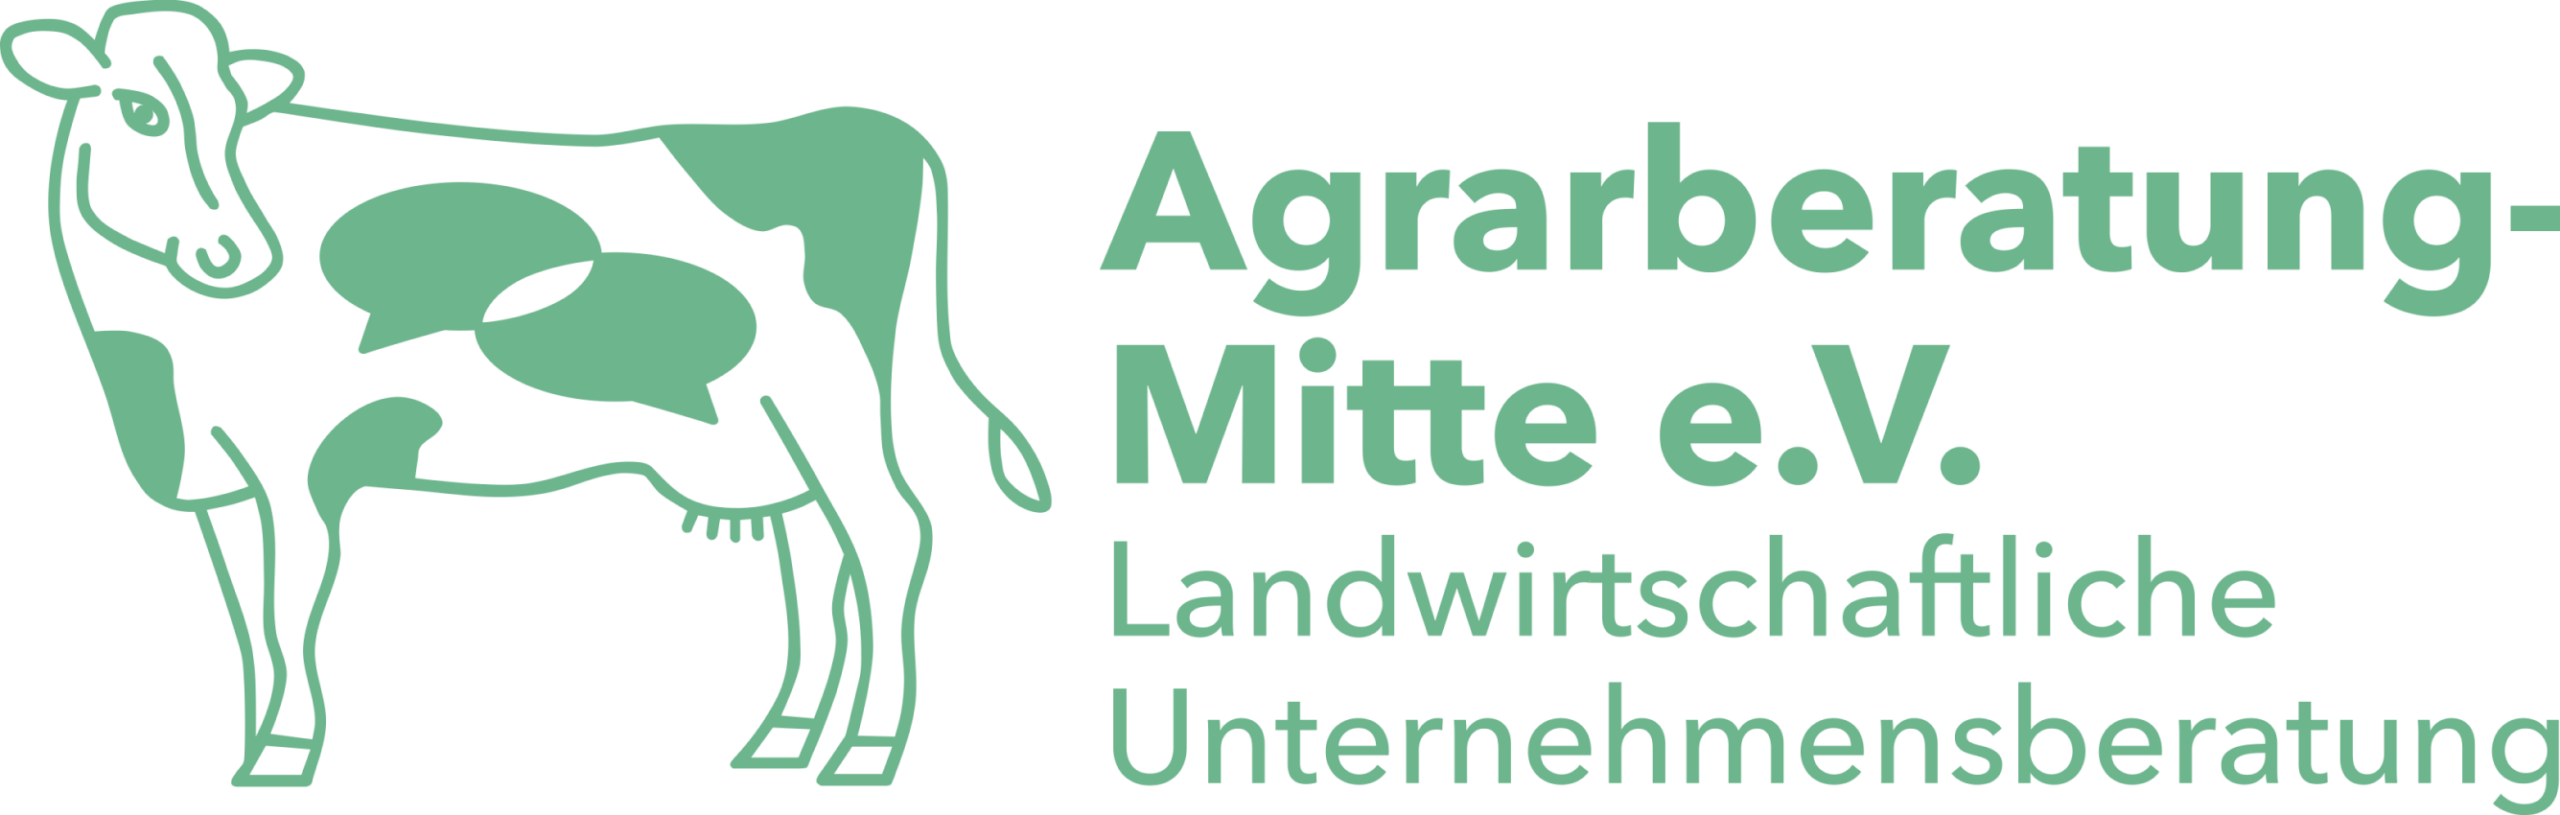 Logo der ABM: Kuh mit Sprechblasen. Text: Agrarberatung-Mitte e.V. Landwirtschaftliche Unternehmensberatung